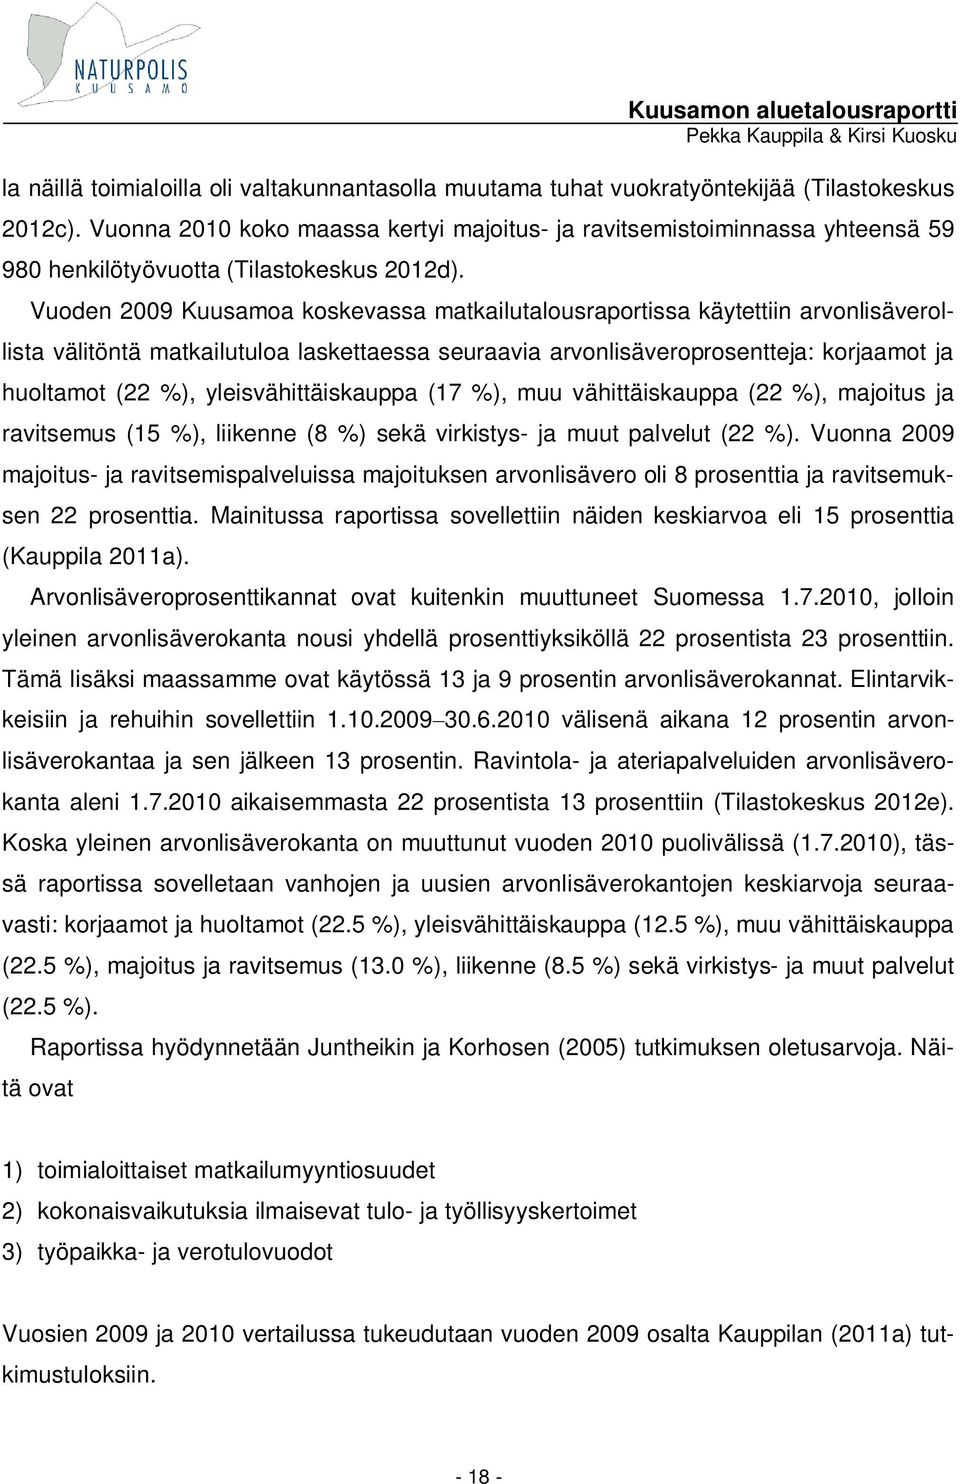 Vuoden 2009 Kuusamoa koskevassa matkailutalousraportissa käytettiin arvonlisäverollista välitöntä matkailutuloa laskettaessa seuraavia arvonlisäveroprosentteja: korjaamot ja huoltamot (22 %),